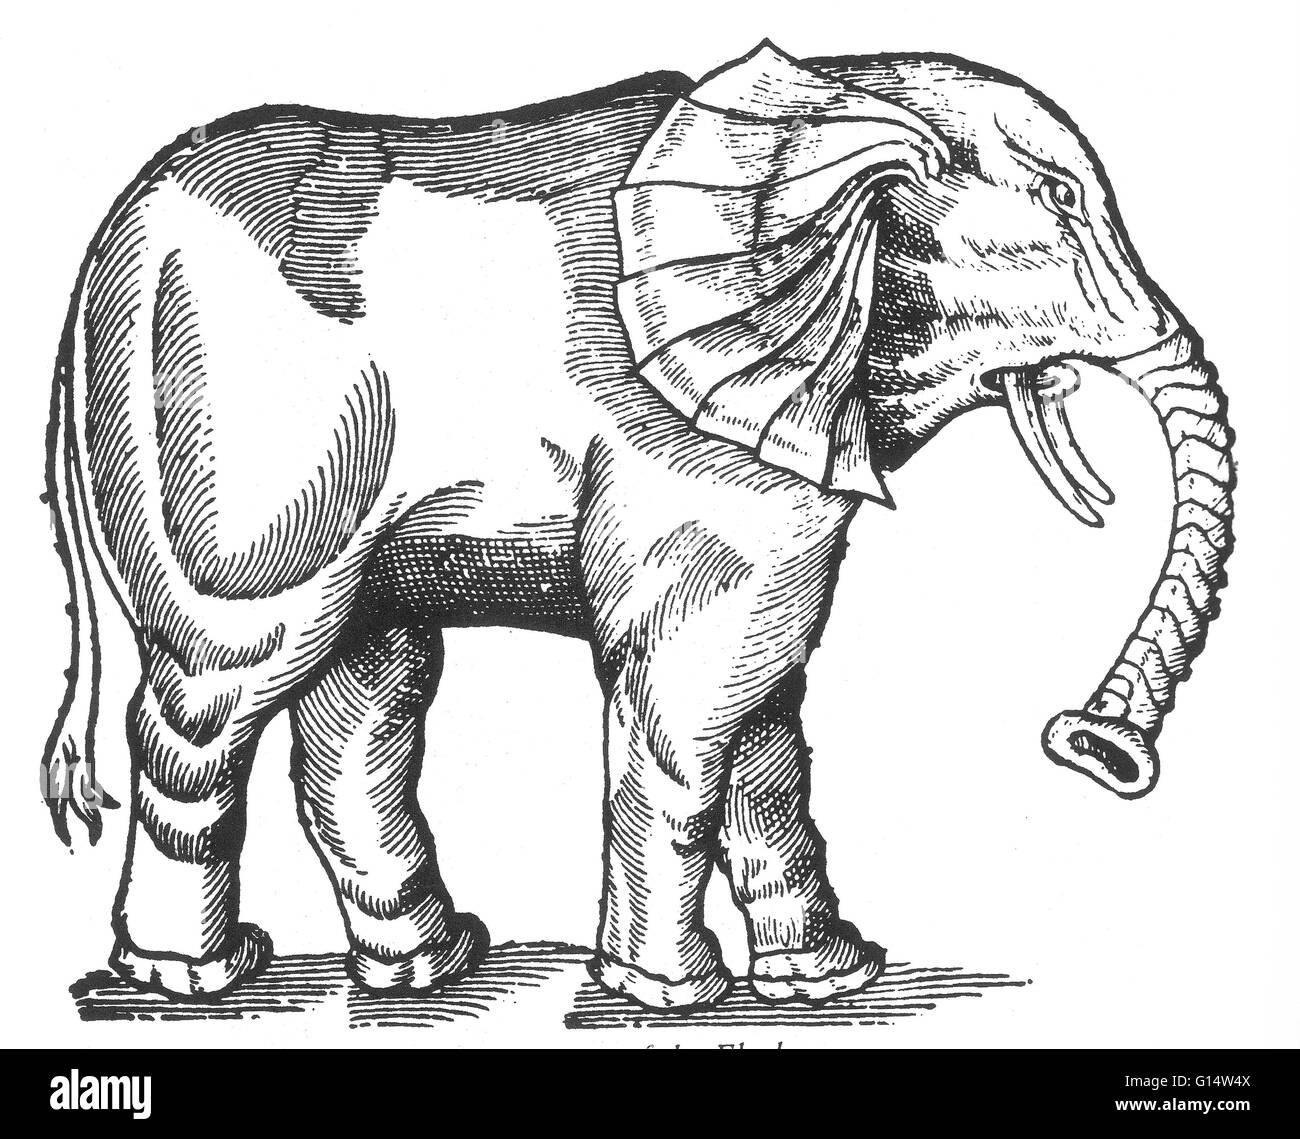 Gravure sur bois d'un "Elephant" de Des Monstres et prodiges d'Ambroise Paré, 1573. Des monstres est rempli avec des comptes du sea devils, truies, marine et d'animaux monstrueux avec des visages humains. Fort de son analyse de la reproduction et illus Banque D'Images